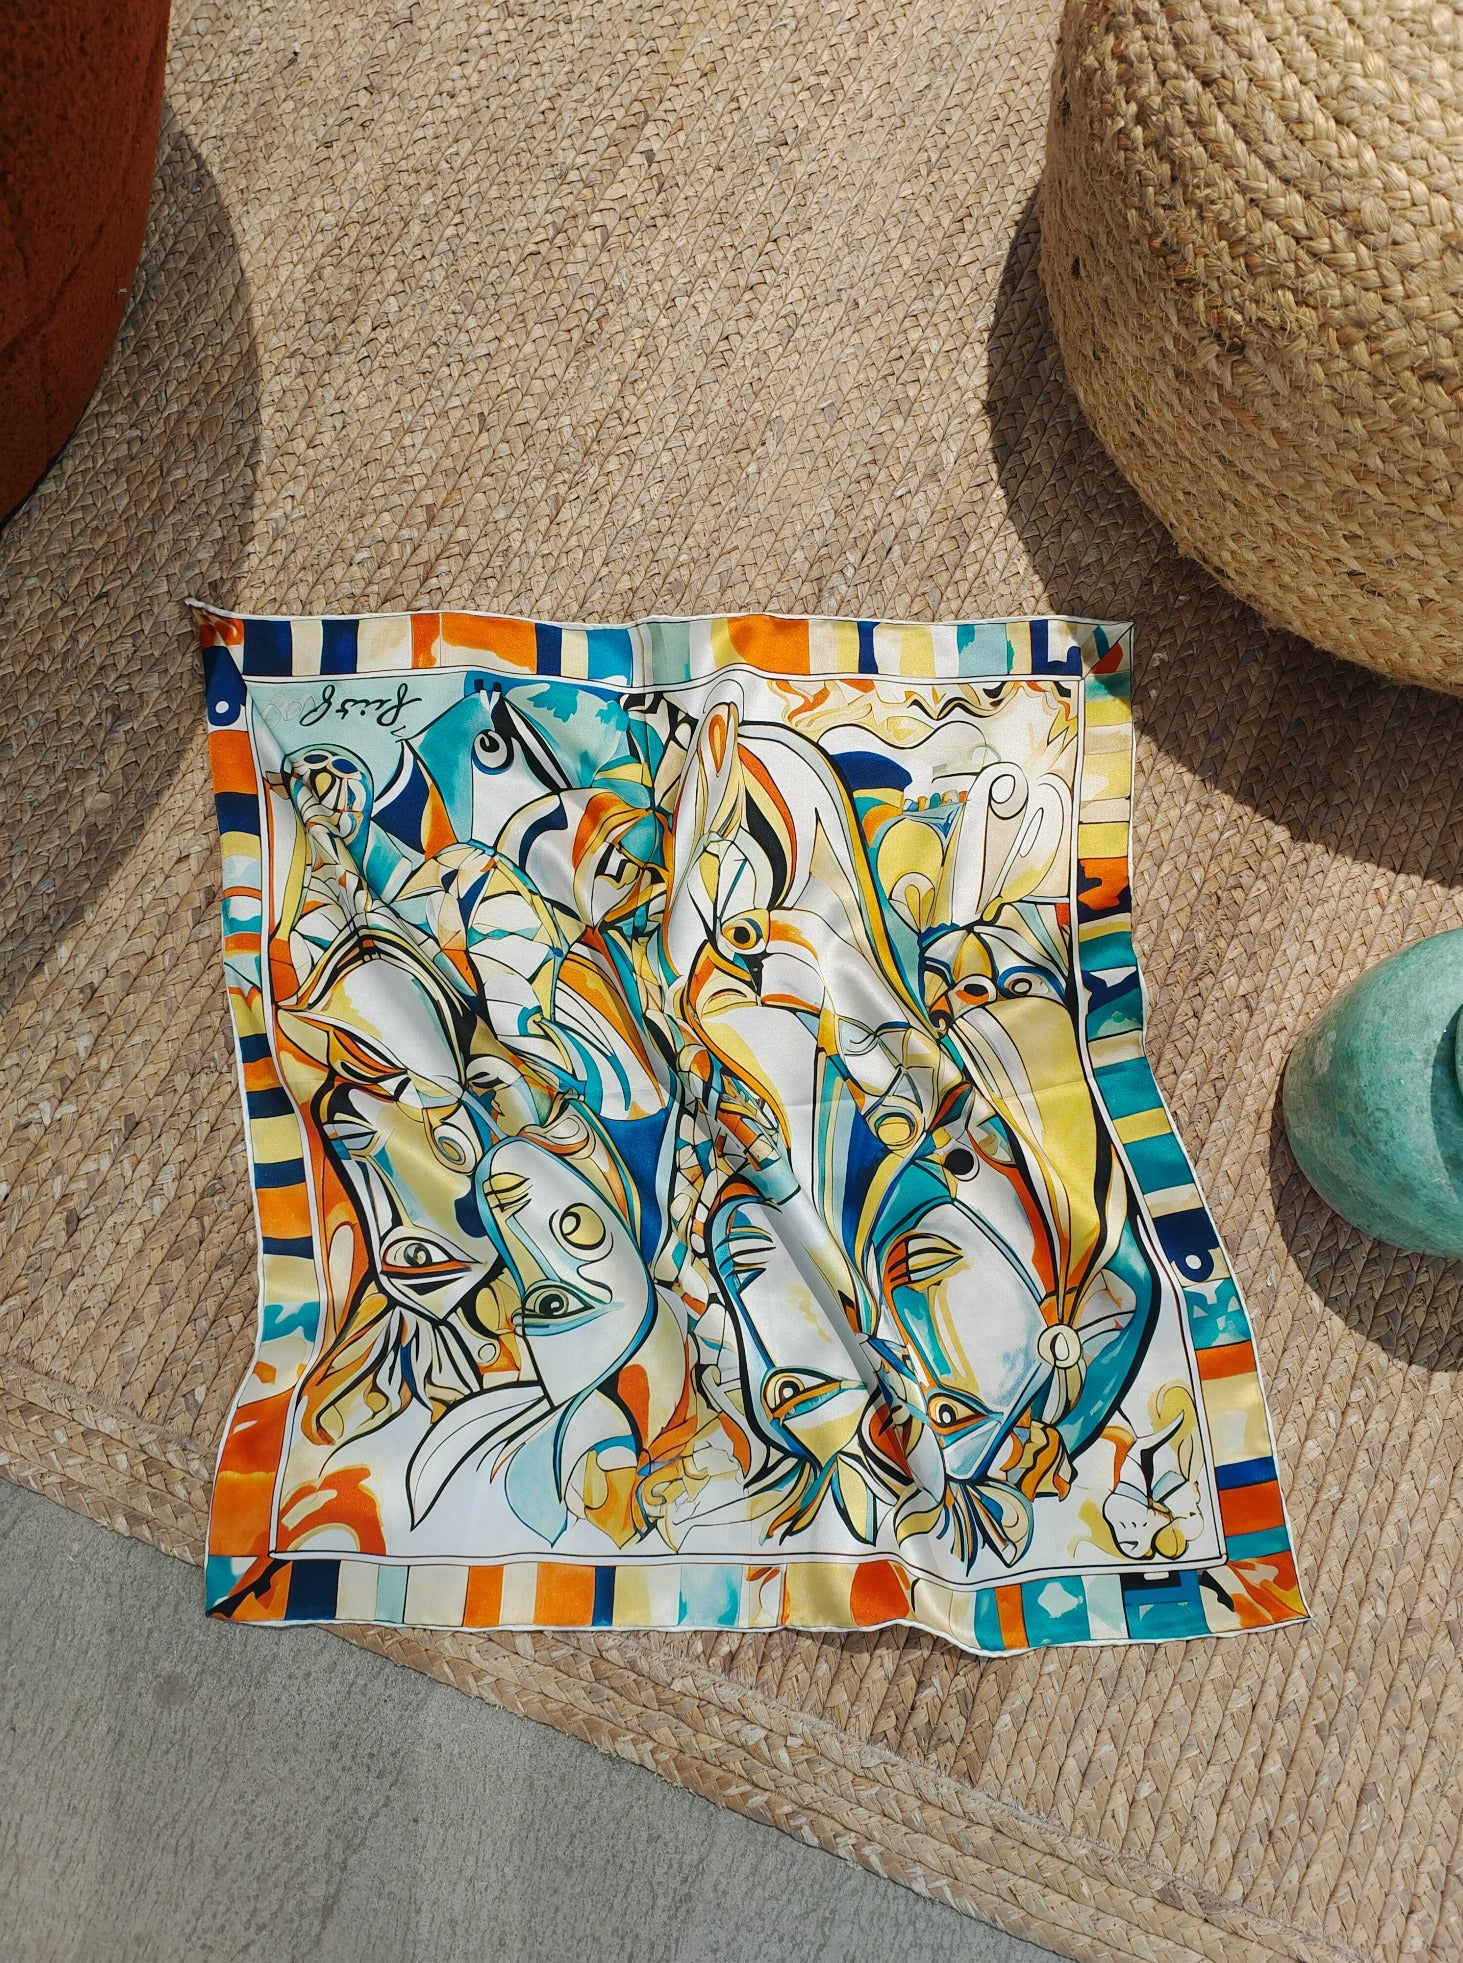 Écharpe en soie exquise : motif abstrait inspiré de l'océan.